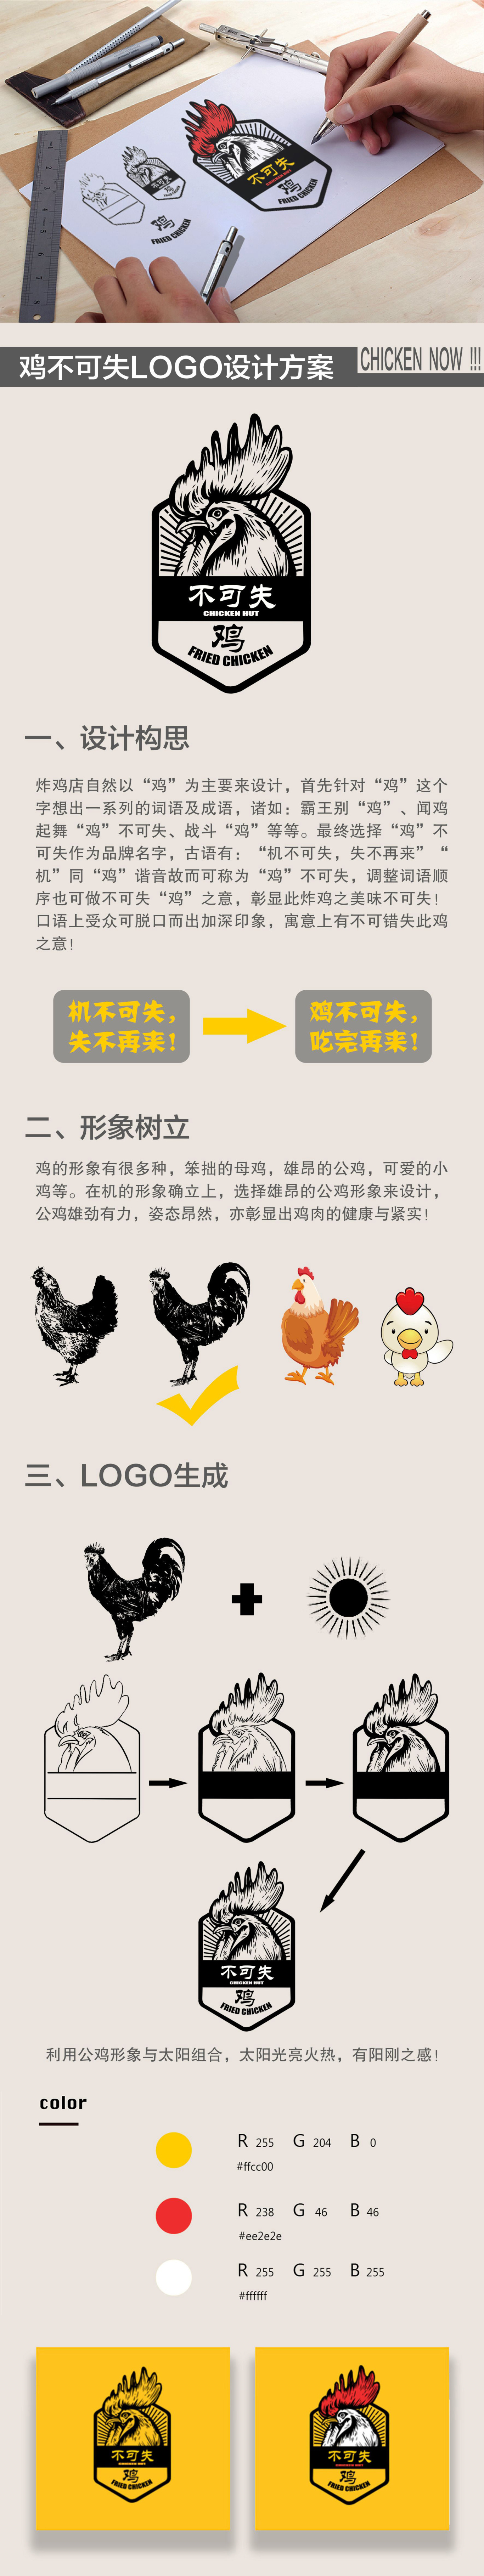 鸡不可失餐饮品牌LOGO/包装设计图0